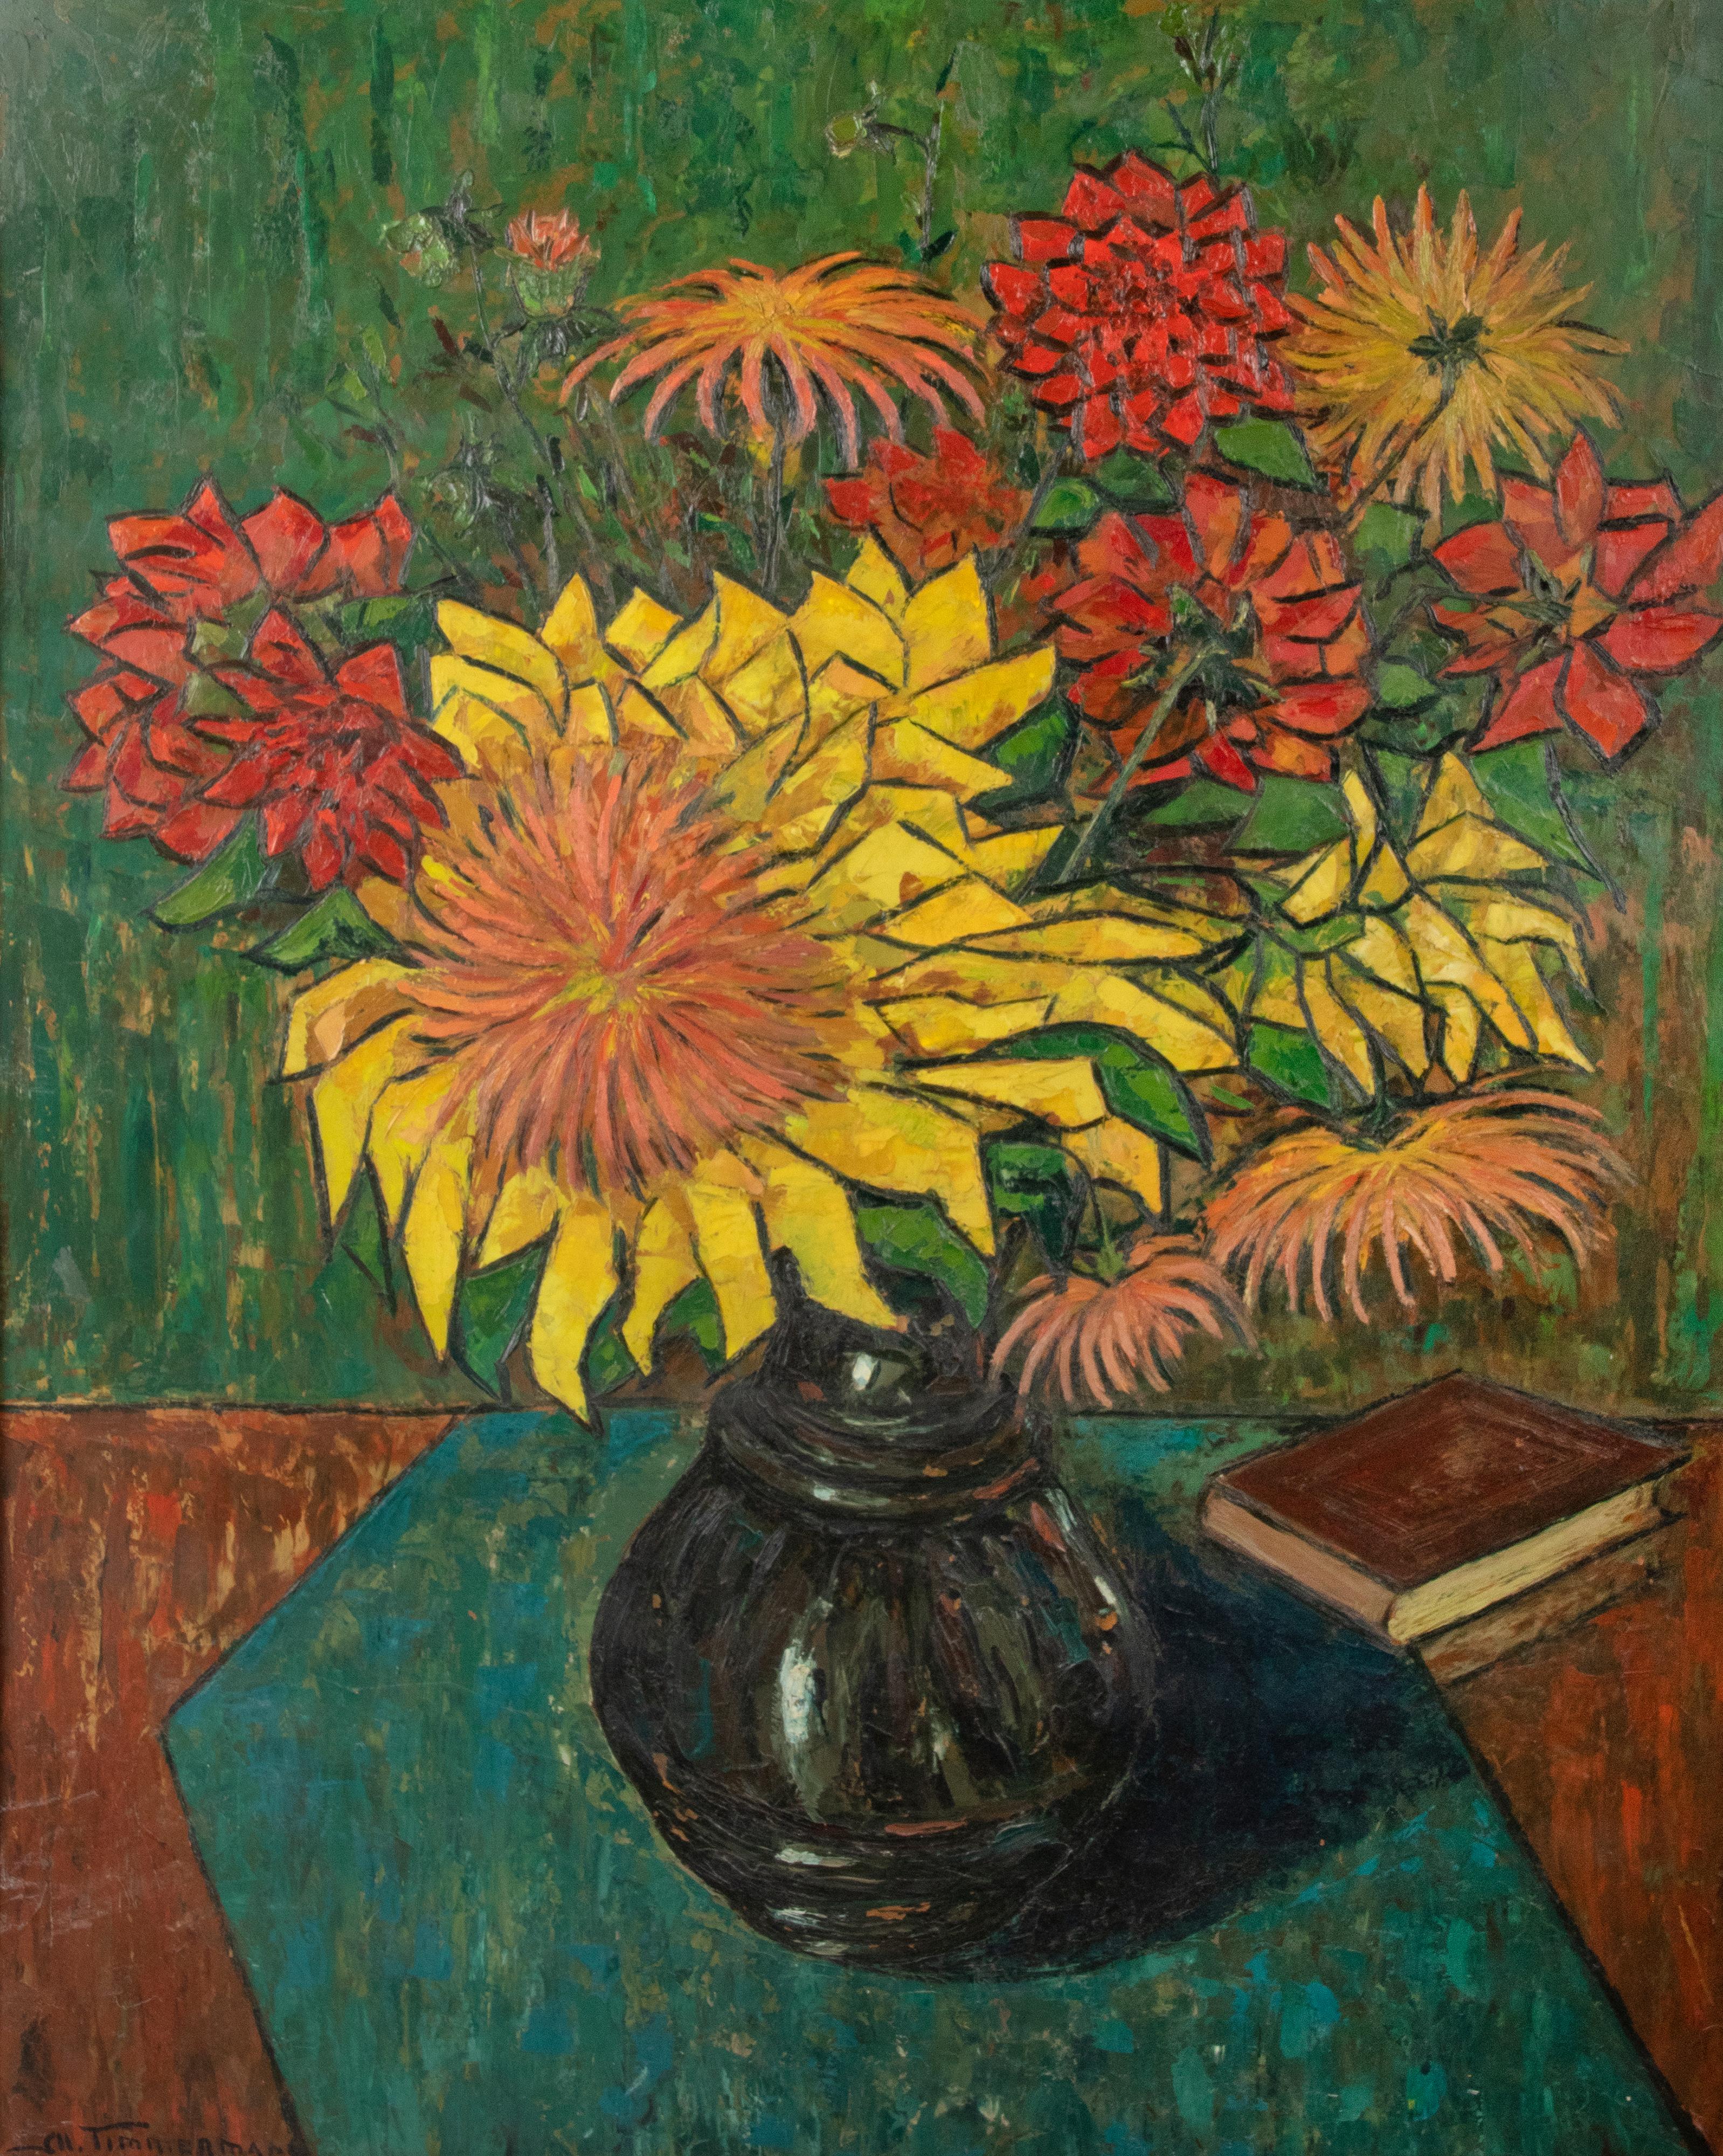 Grand tableau décoratif représentant des fleurs colorées dans un vase. Le tableau est peint à l'huile sur carton et date d'environ 1960. Le tableau est encadré dans un simple cadre en bois, de la même époque que le tableau. Signé Timmermans en bas à